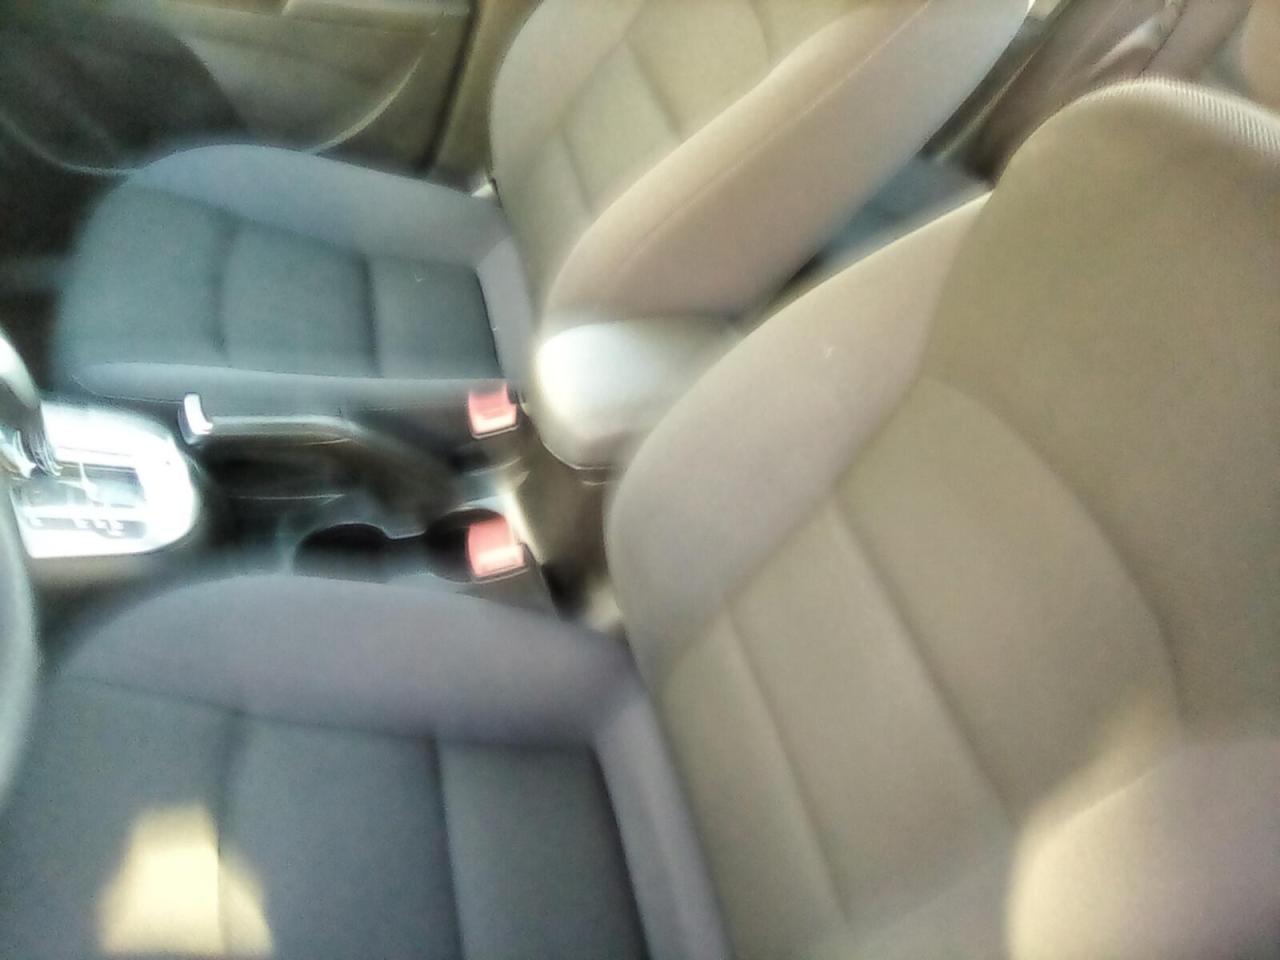 2015 Chevrolet Cruze 1LT Auto